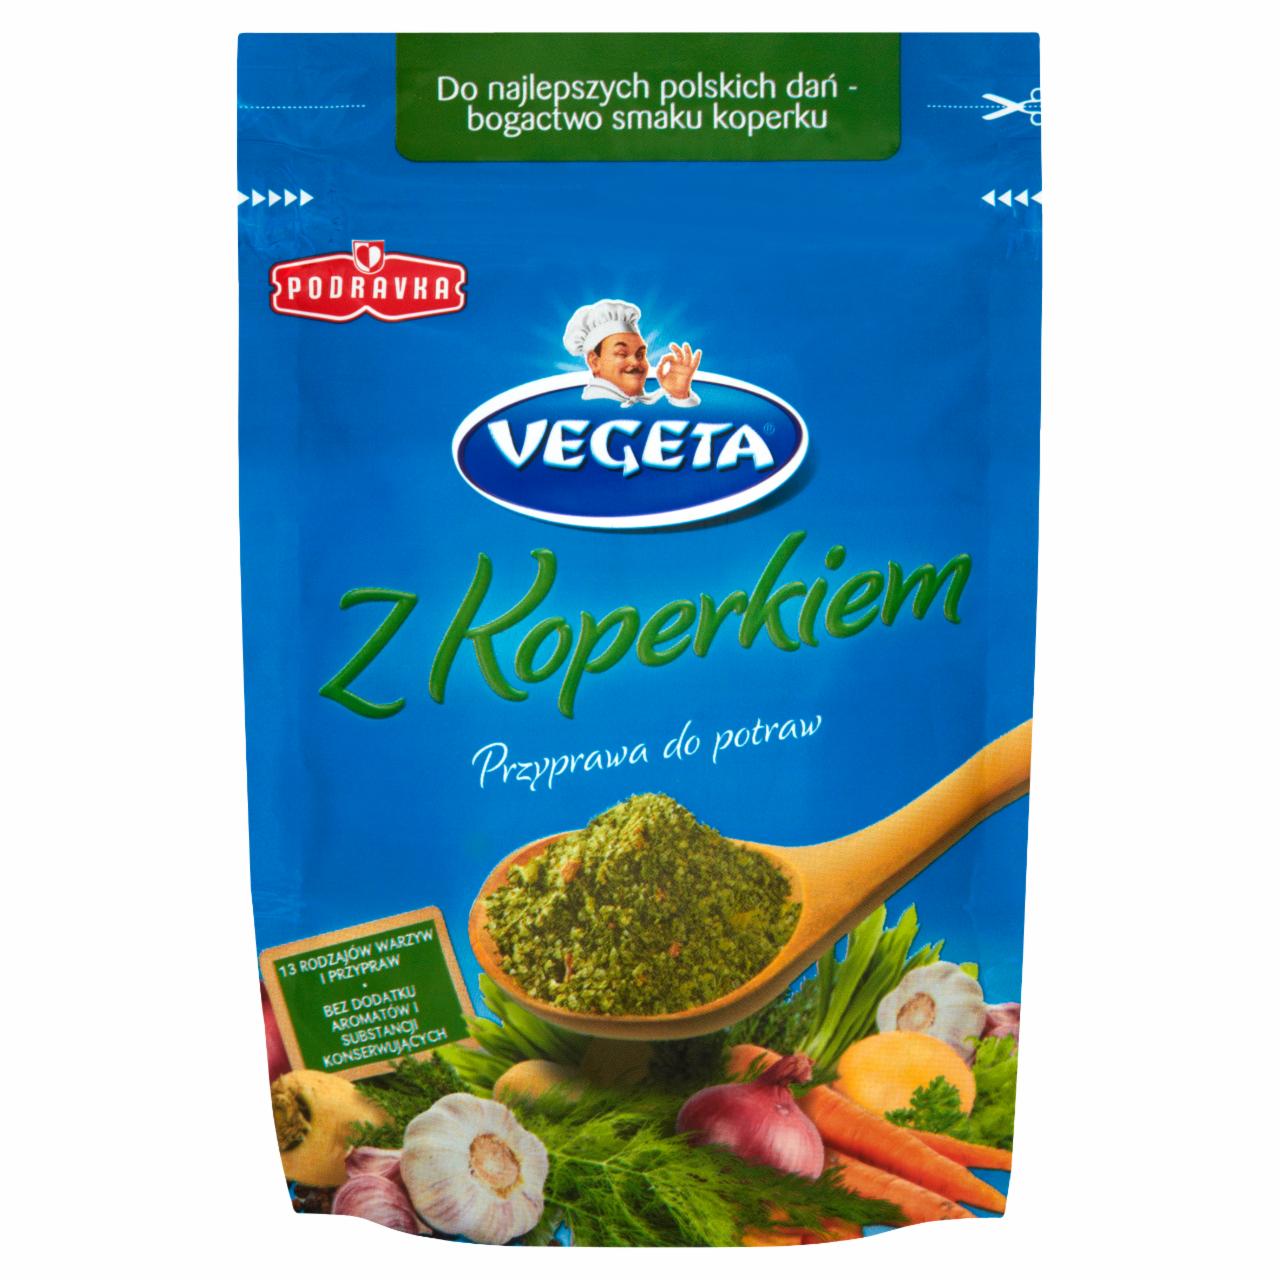 Zdjęcia - Vegeta z Koperkiem Przyprawa do potraw 80 g